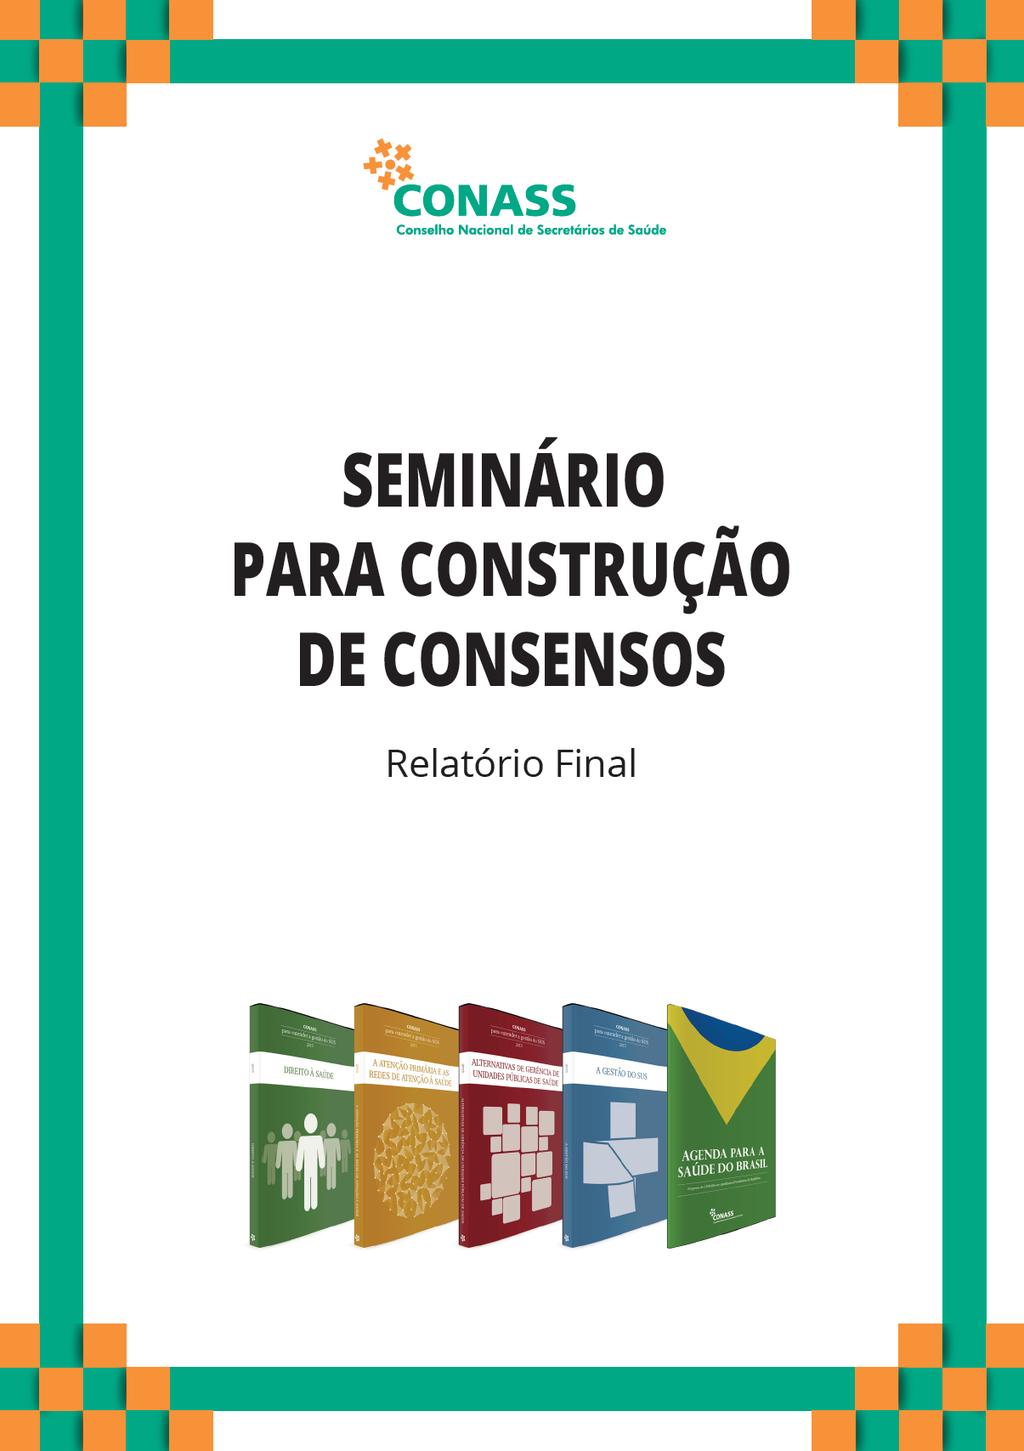 SEMINÁRIO DO CONASS PARA CONSTRUÇÃO DE CONSENSOS Brasília, 08 e 09 de julho de 2015 Preocupações e prioridades dos Secretários Estaduais de Saúde nos